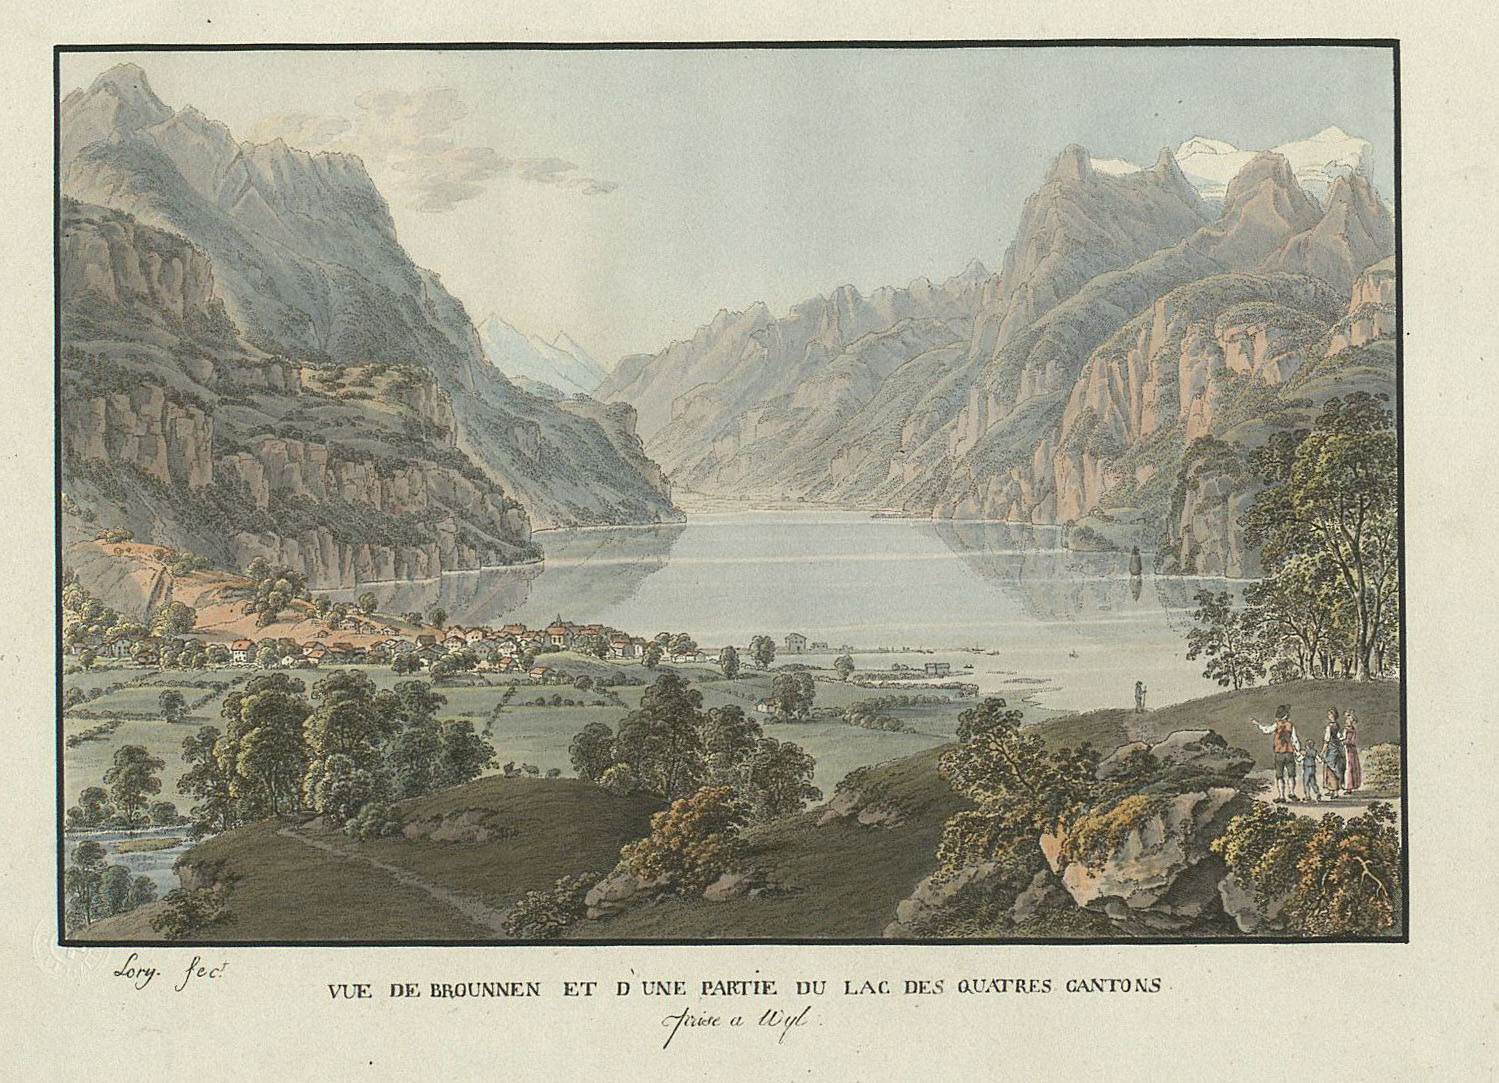 Vue de Brounnen et d'une partie du Lac des Quatres Cantons prise à Wyl